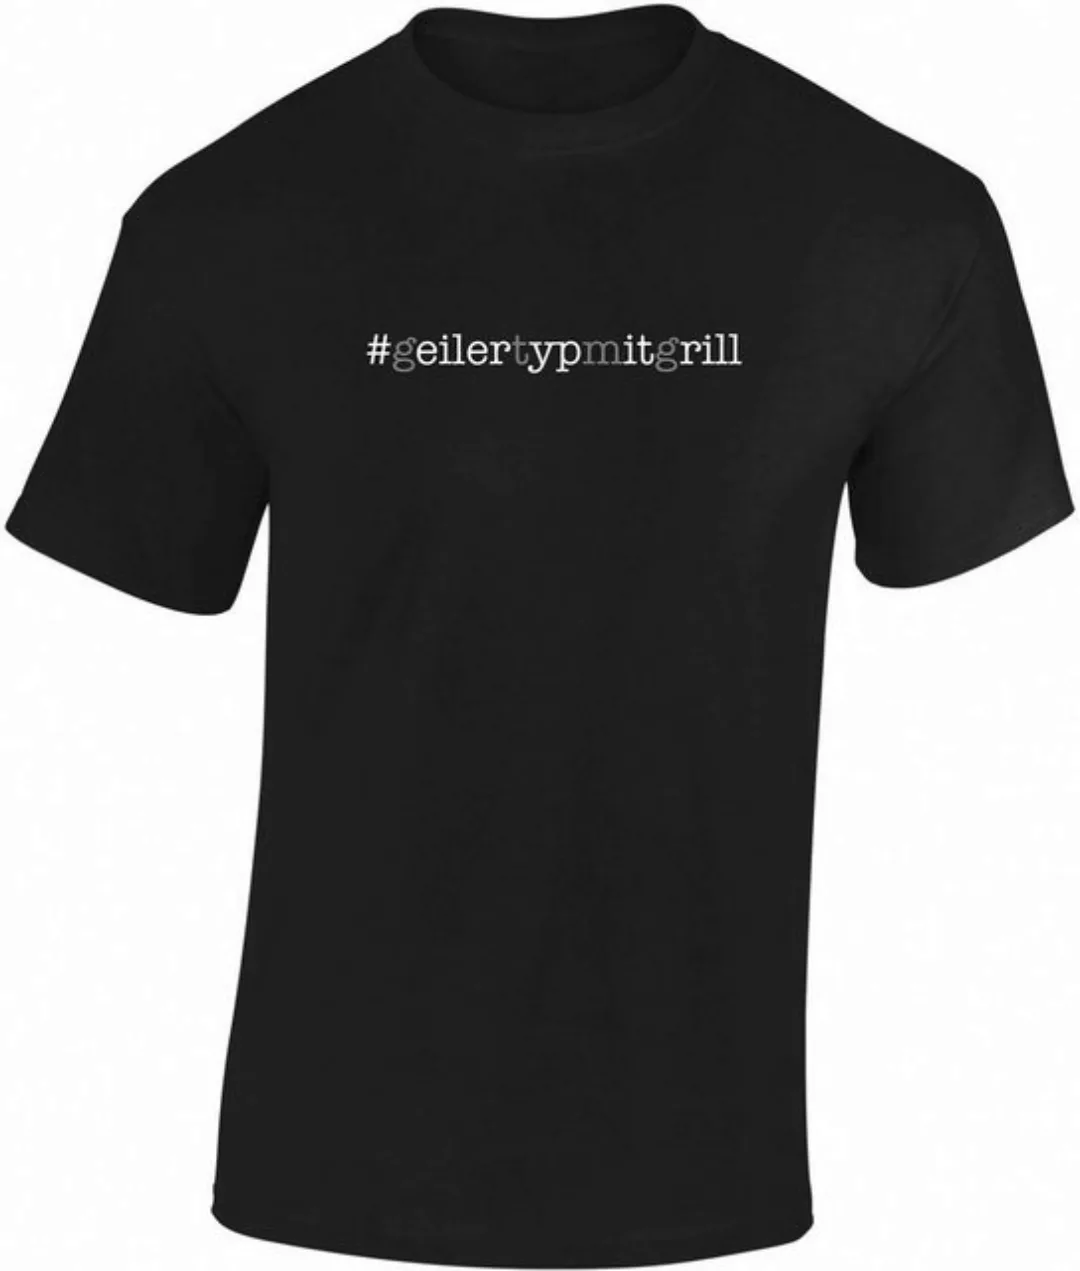 Baddery Print-Shirt Fun T-Shirt - Geiler Typ mit Grill - Grillen Grillmeist günstig online kaufen